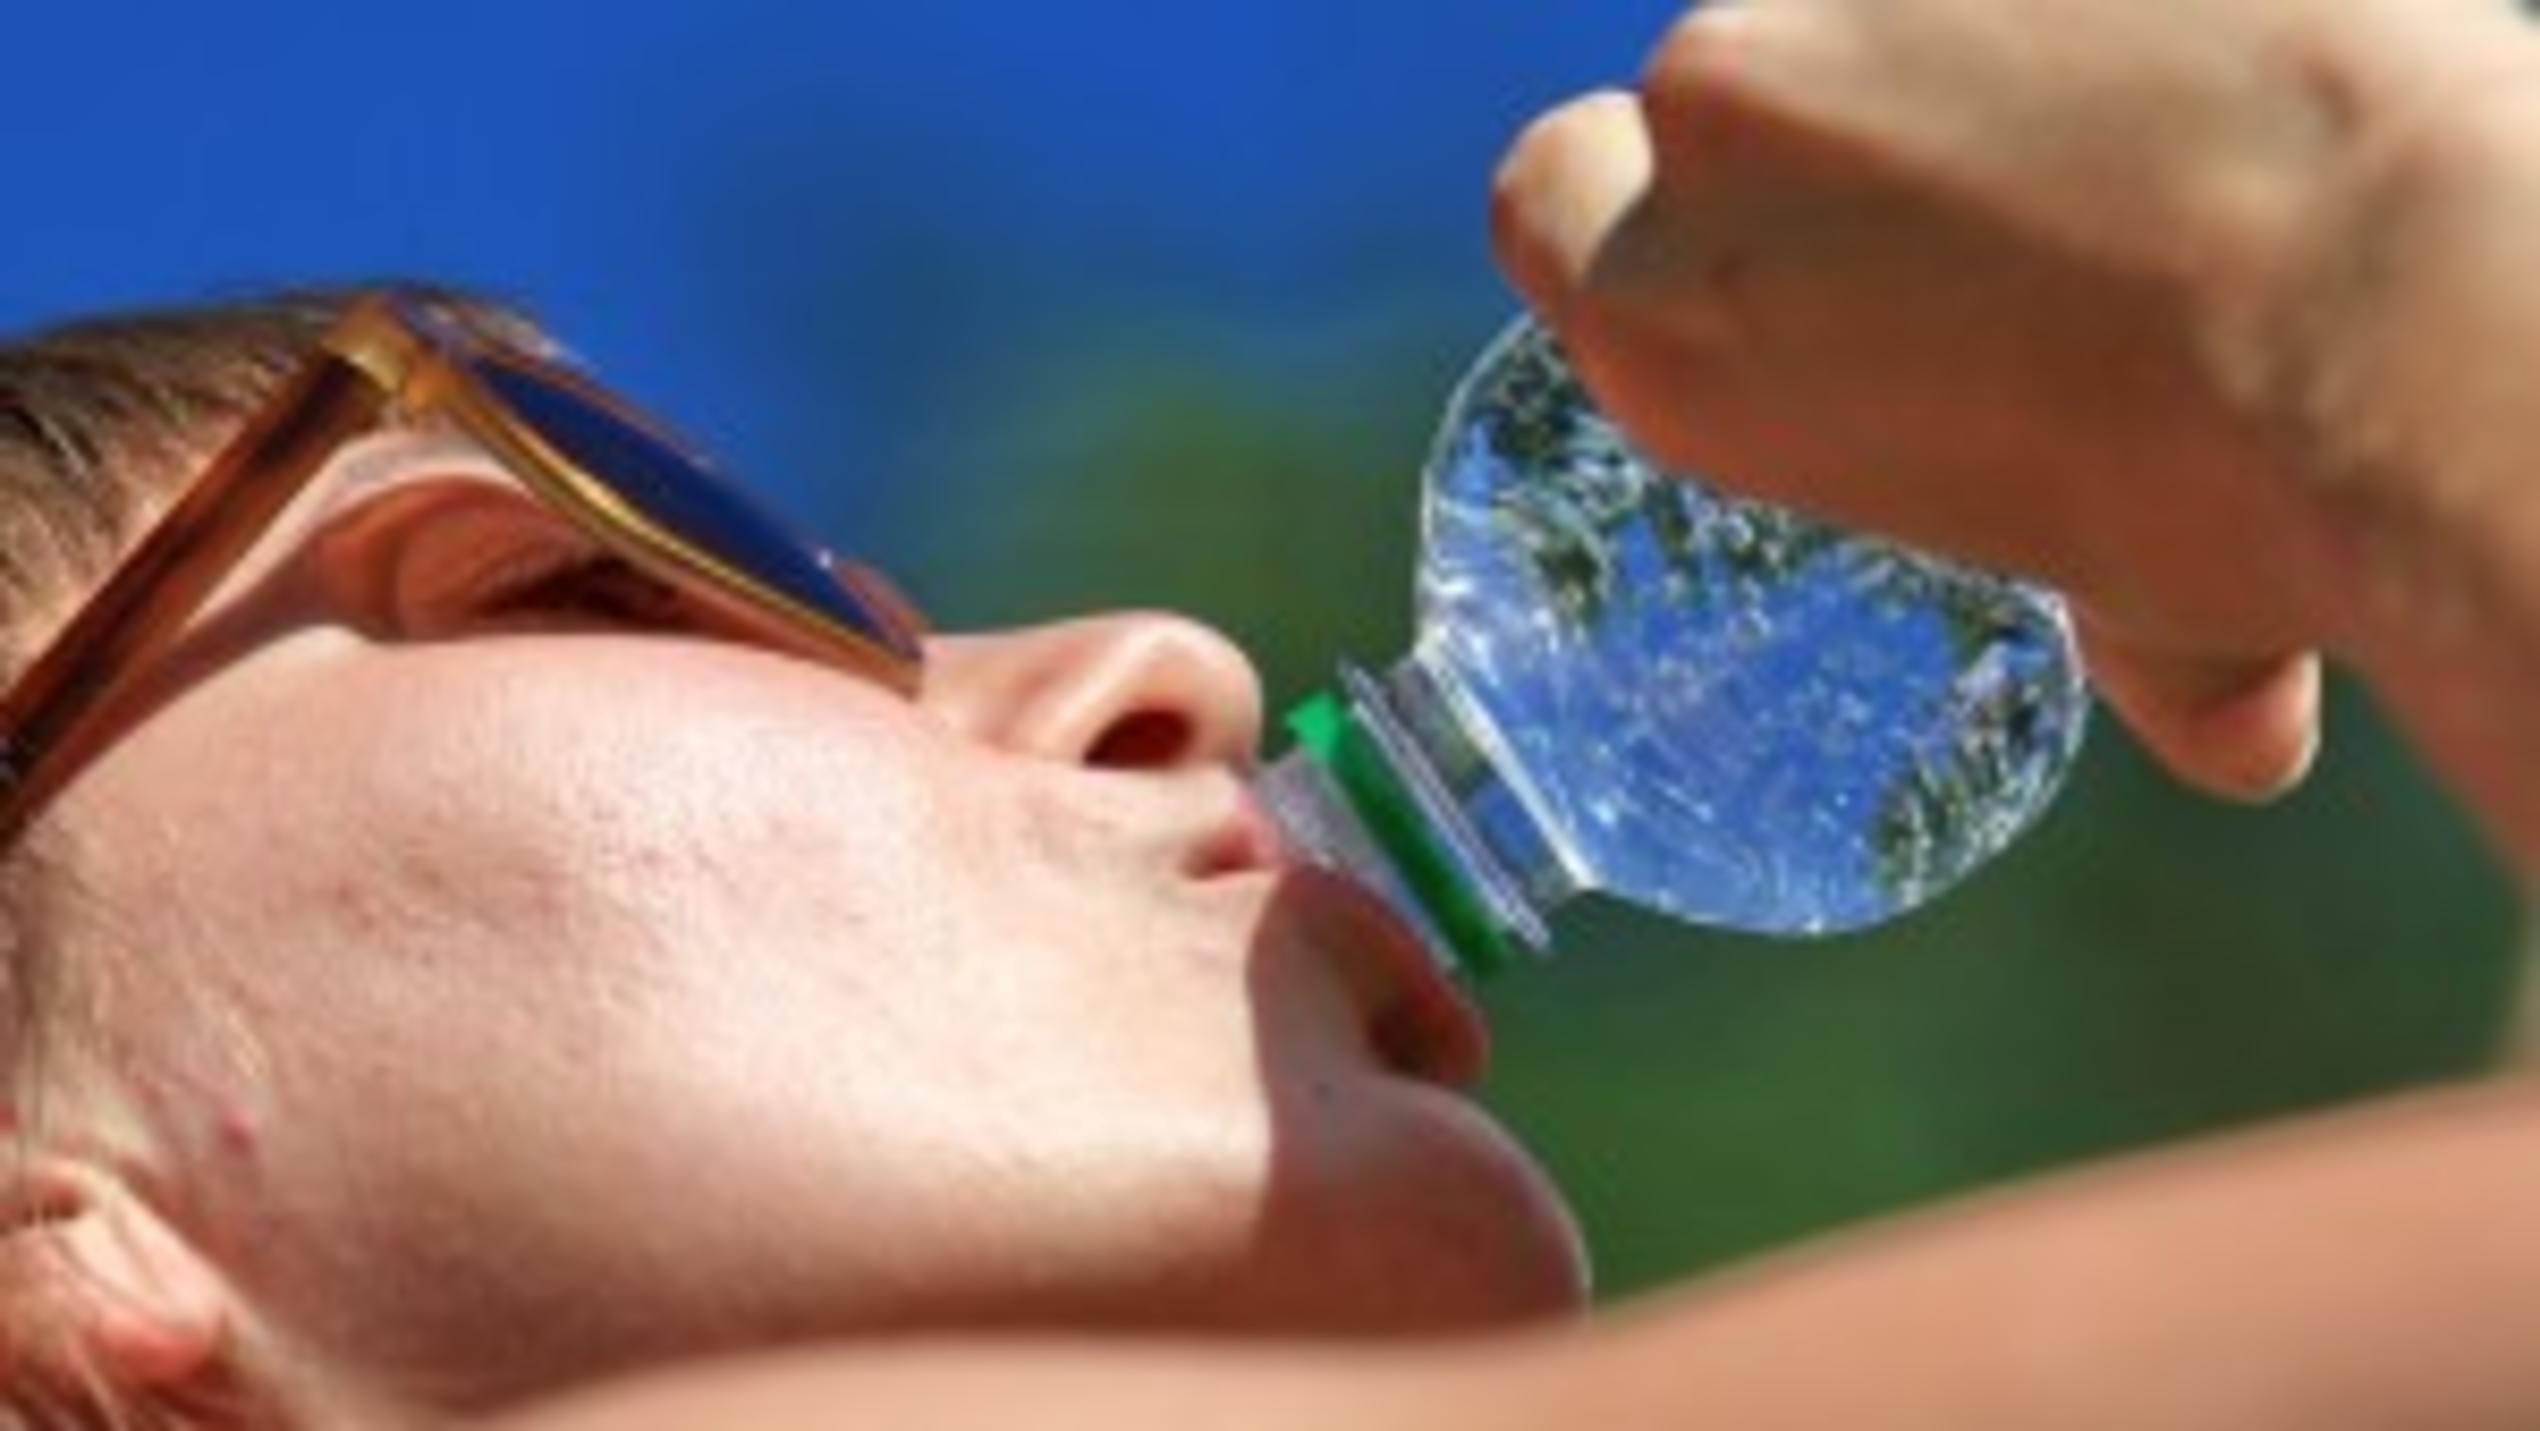 Öko-Test: Jedes fünfte Wasser mangelhaft oder ungenügend